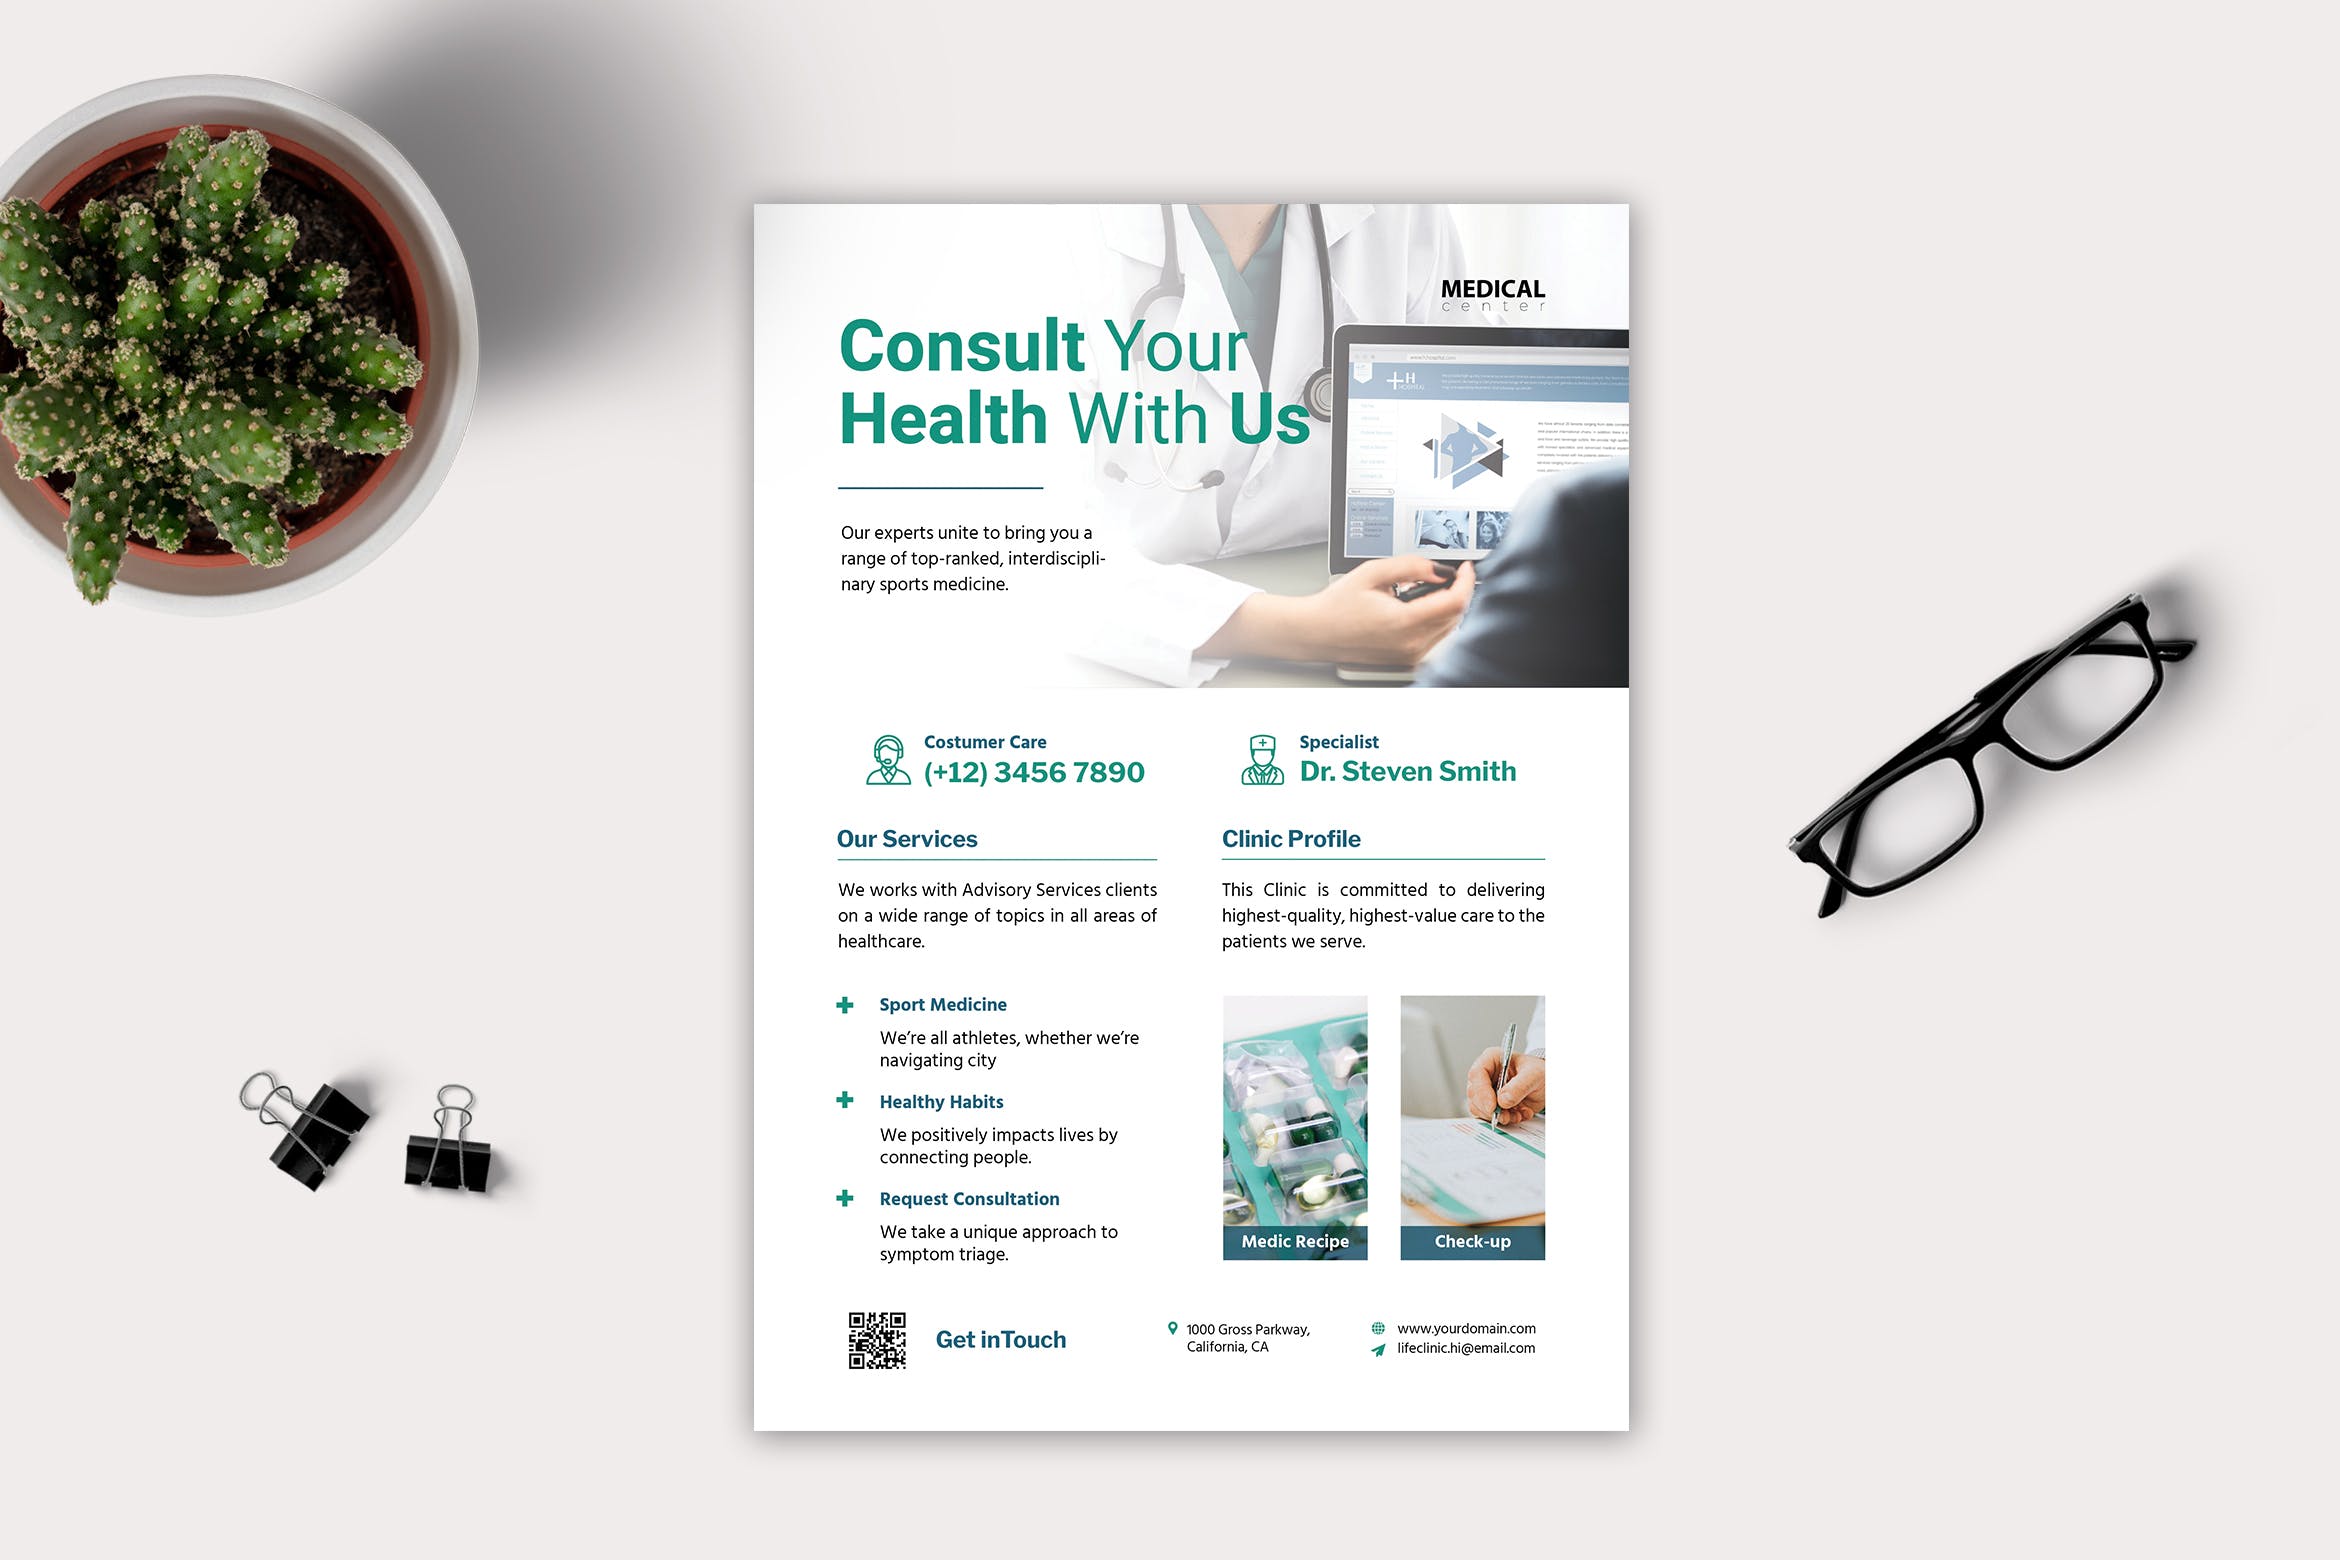 医疗健康中心/私人诊所宣传单设计模板 Medical Flyer插图